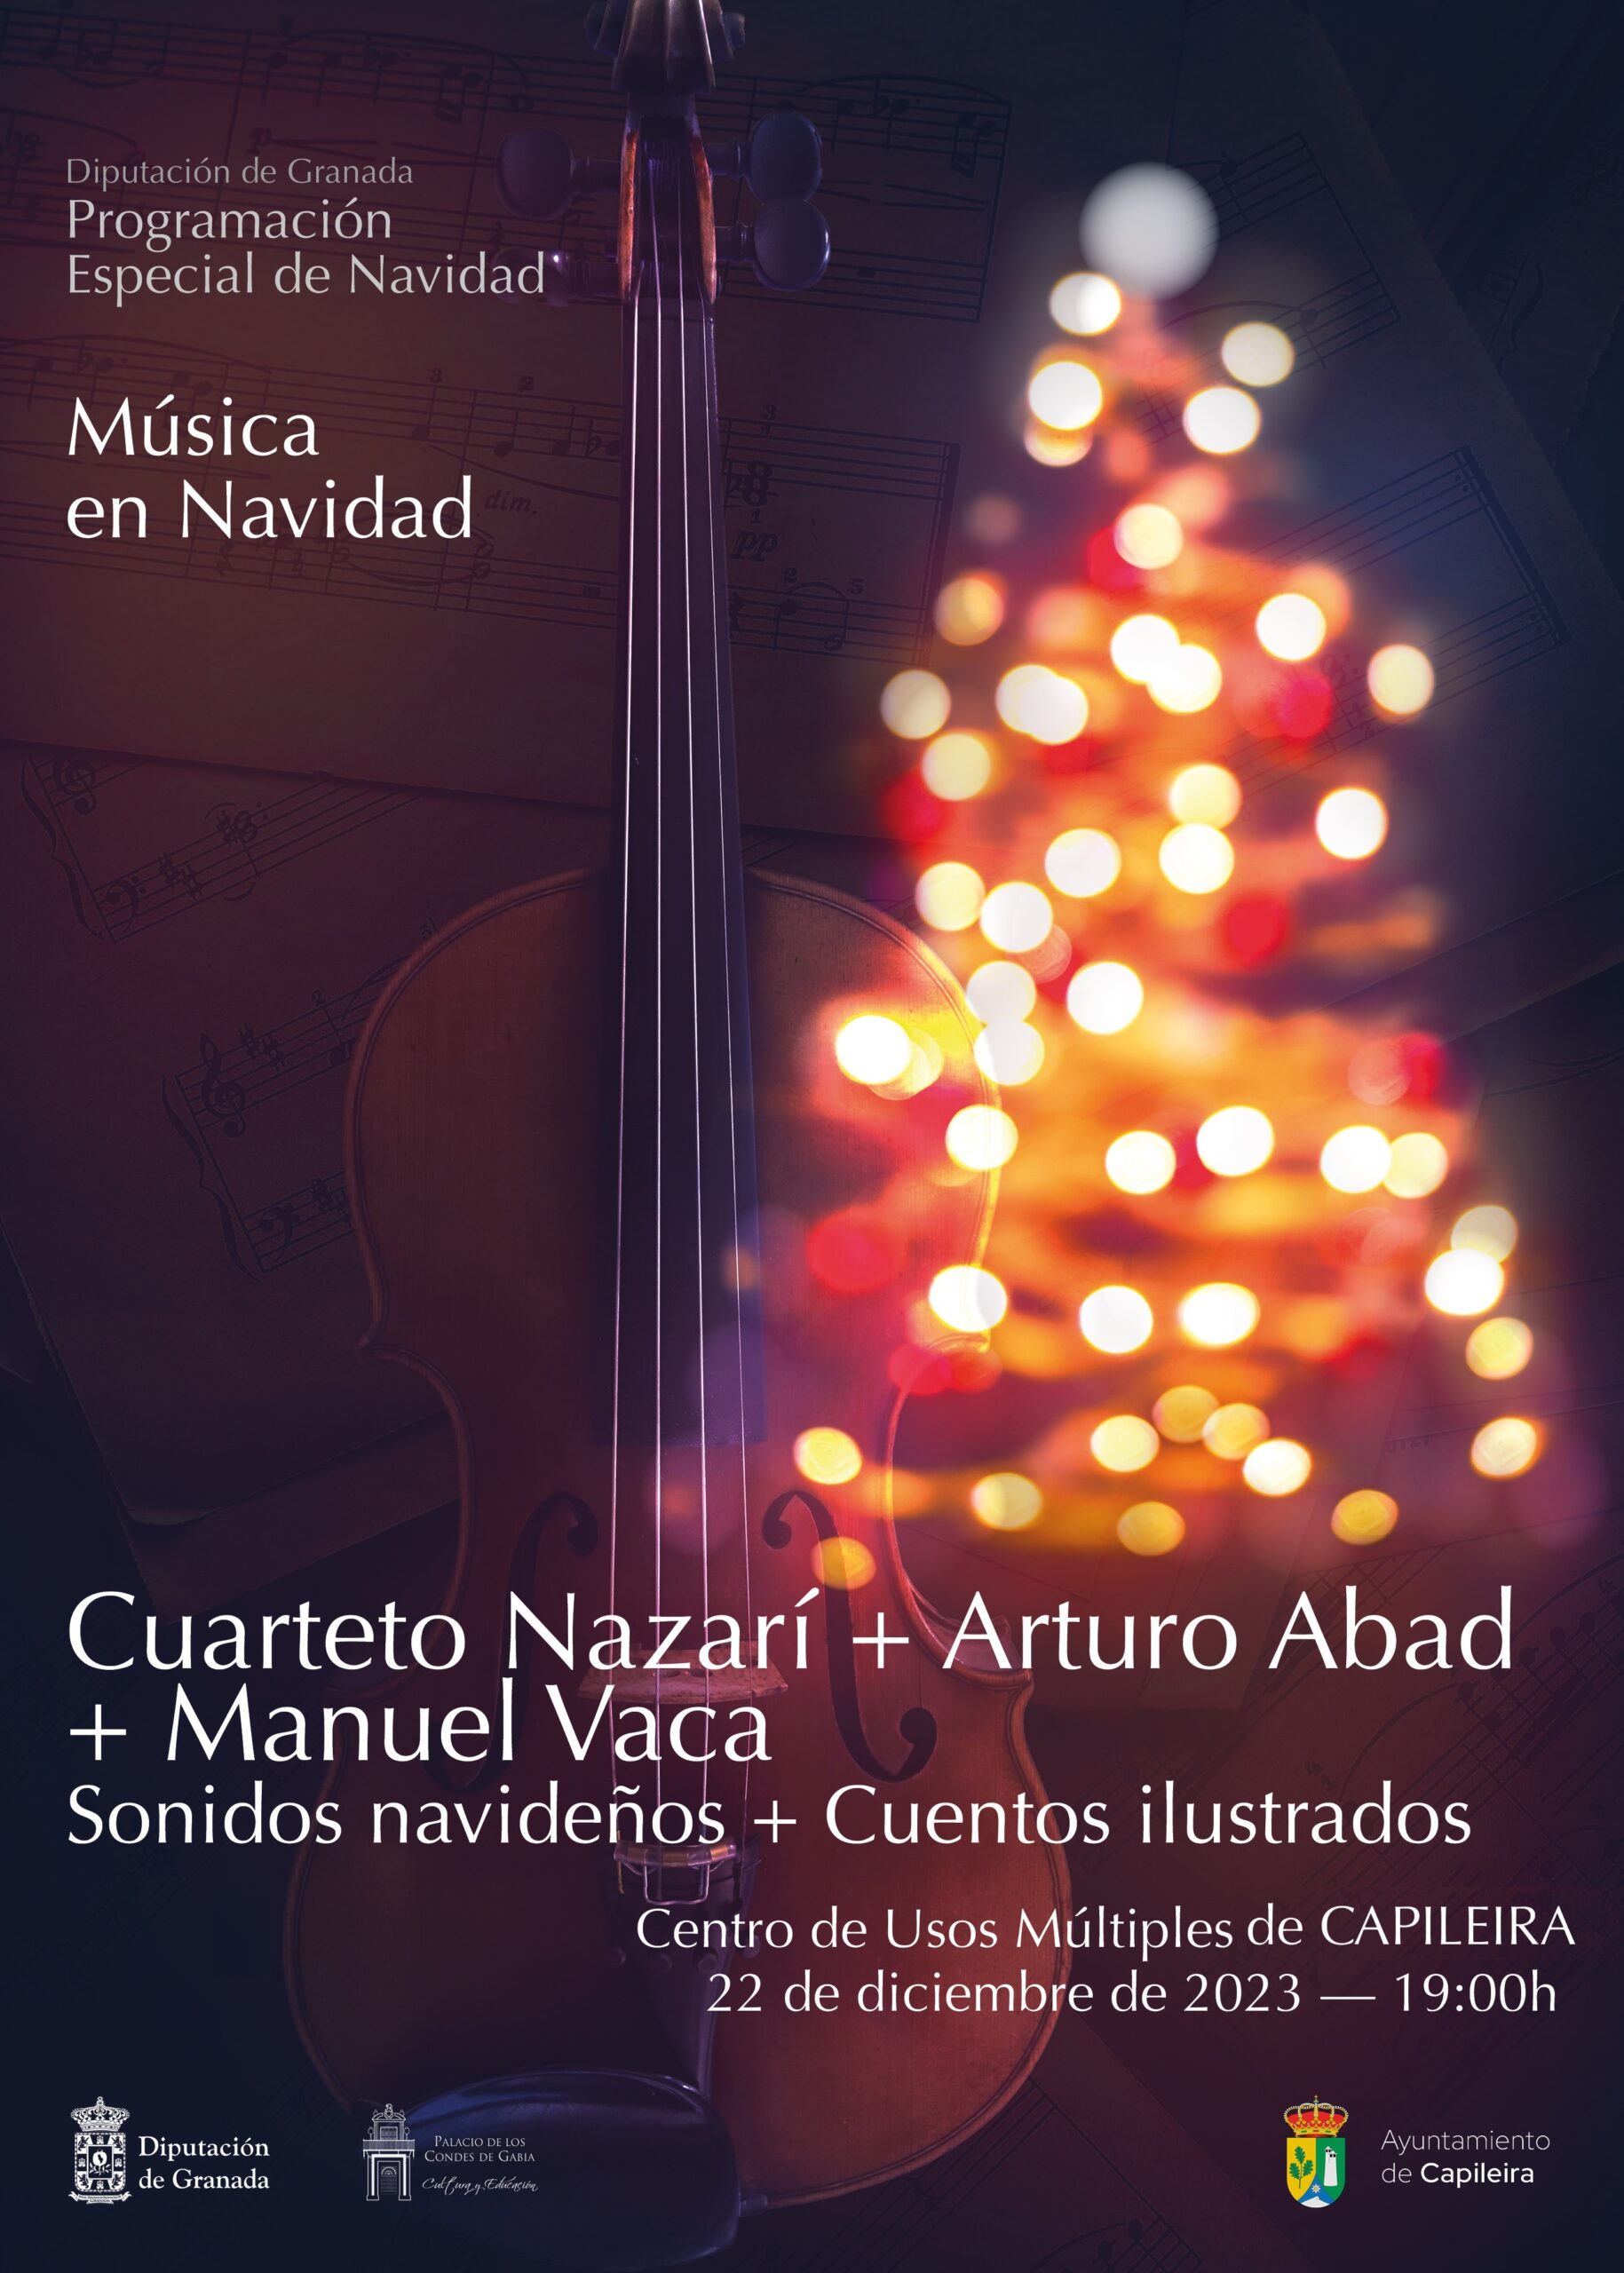 MÚSICA NAVIDEÑA, Cuarteto Nazarí + Arturo Abad +Manuel Vaca en Capileira